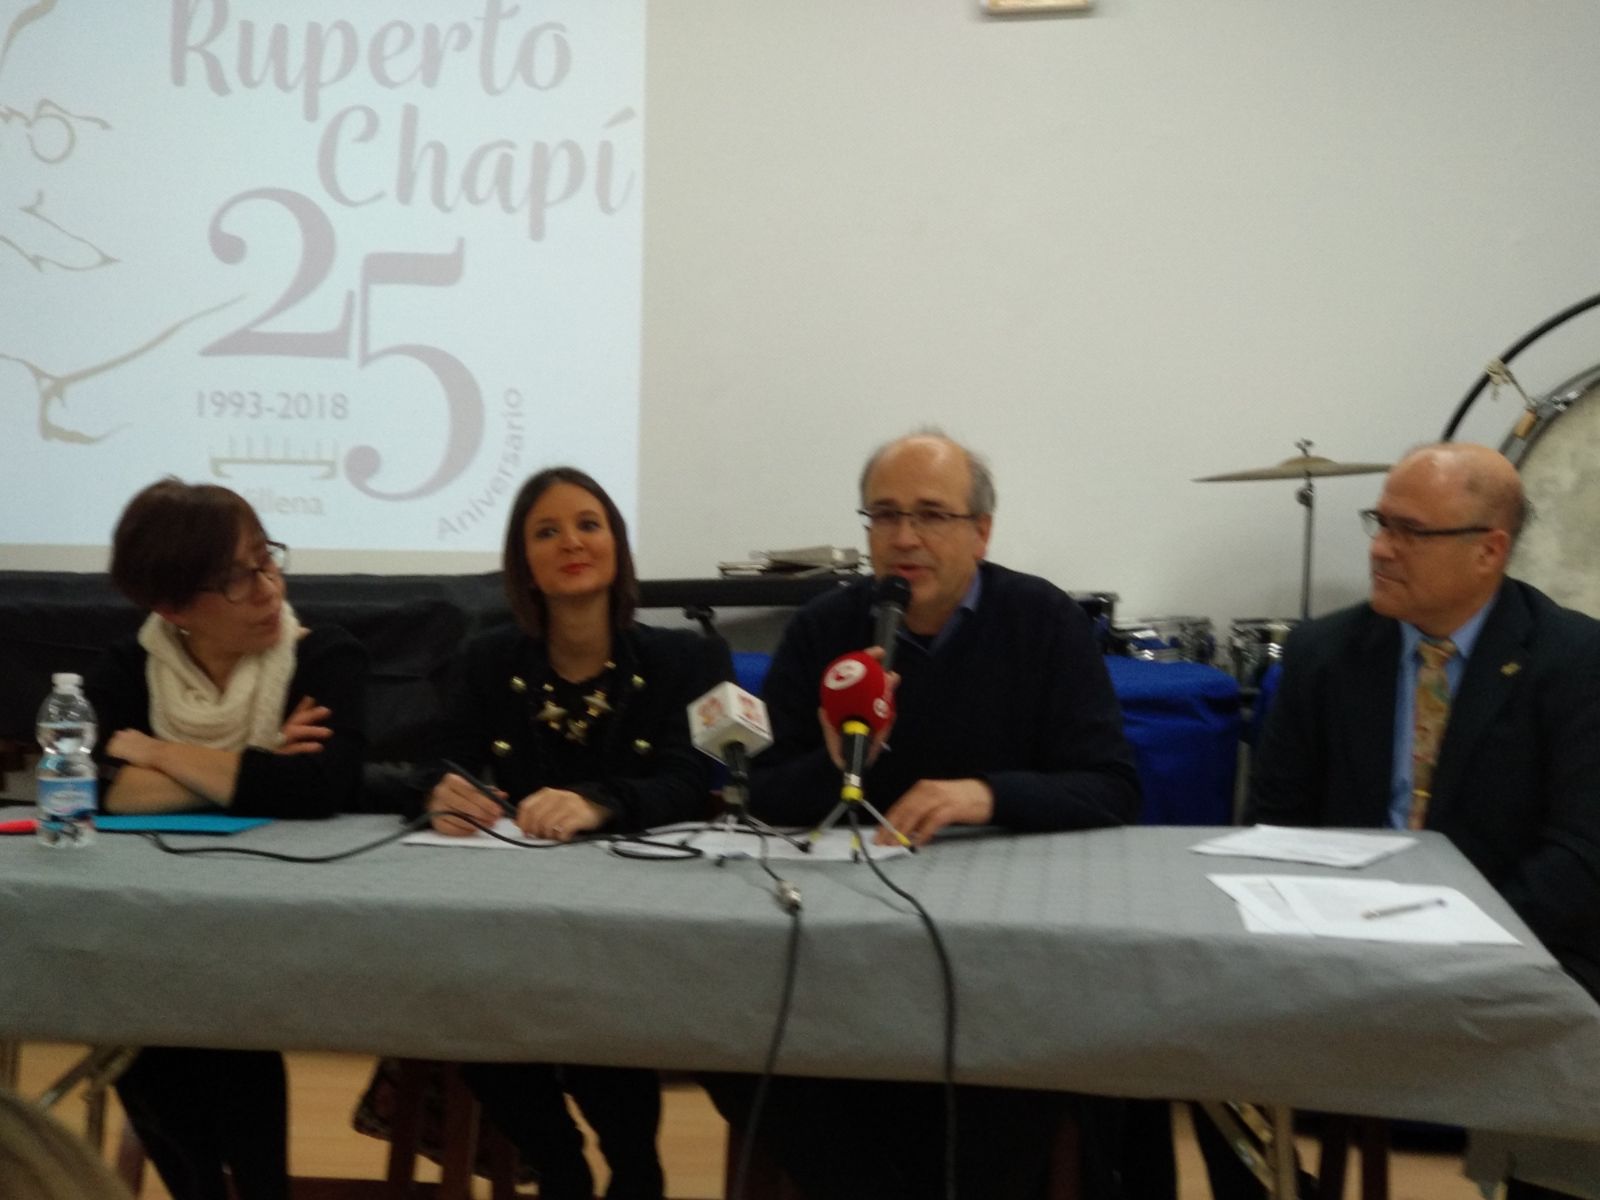 Primer acto conmemorativo del 25 aniversario de la Sociedad Musical Ruperto Chapí